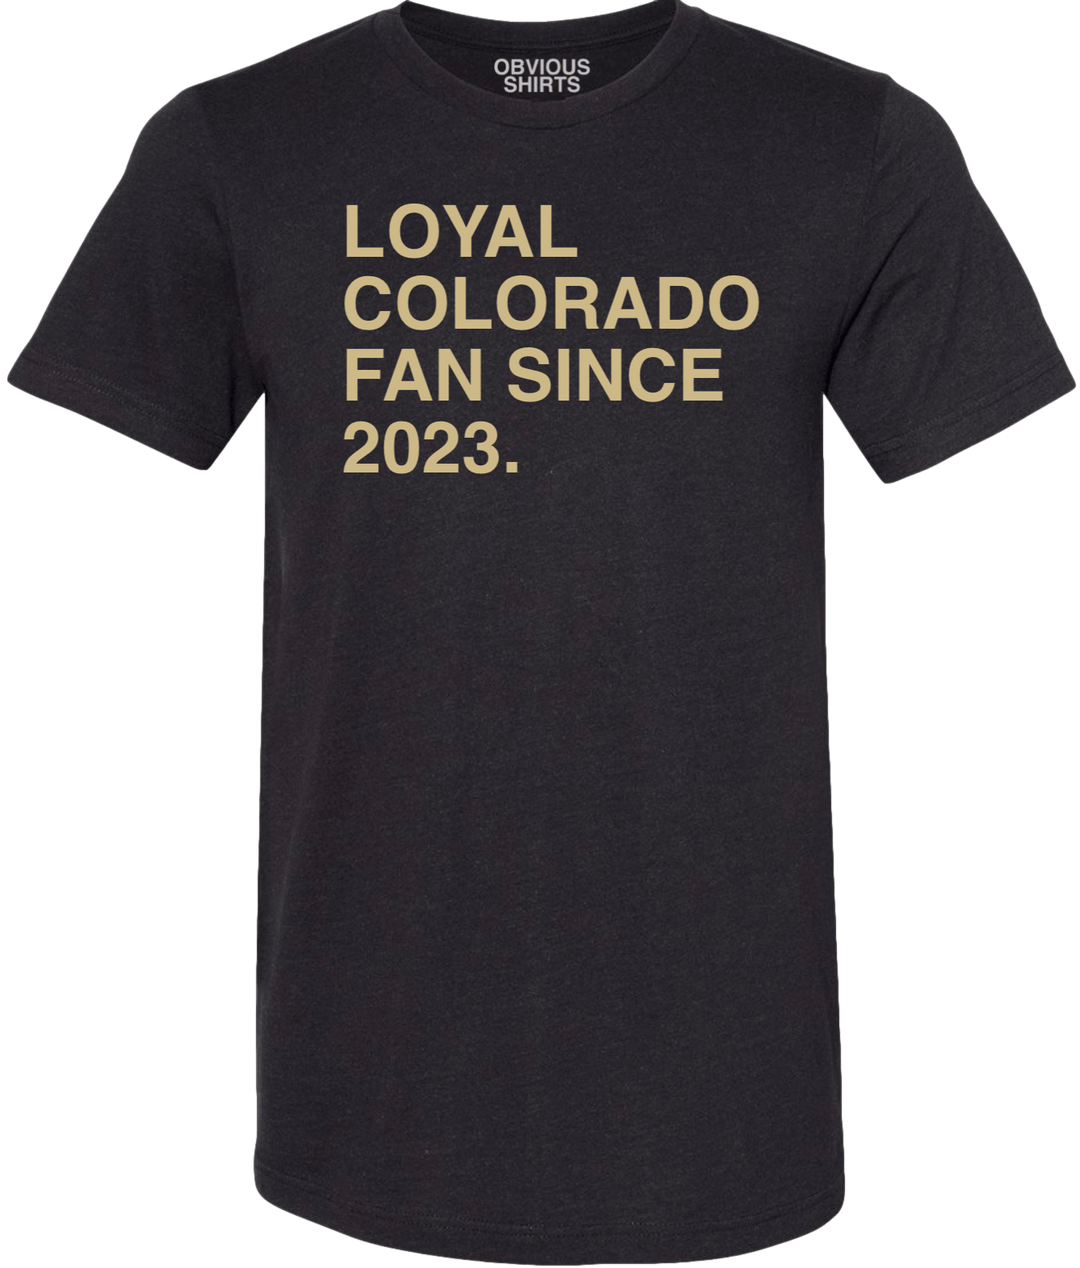 LOYAL COLORADO FAN SINCE 2023. - OBVIOUS SHIRTS